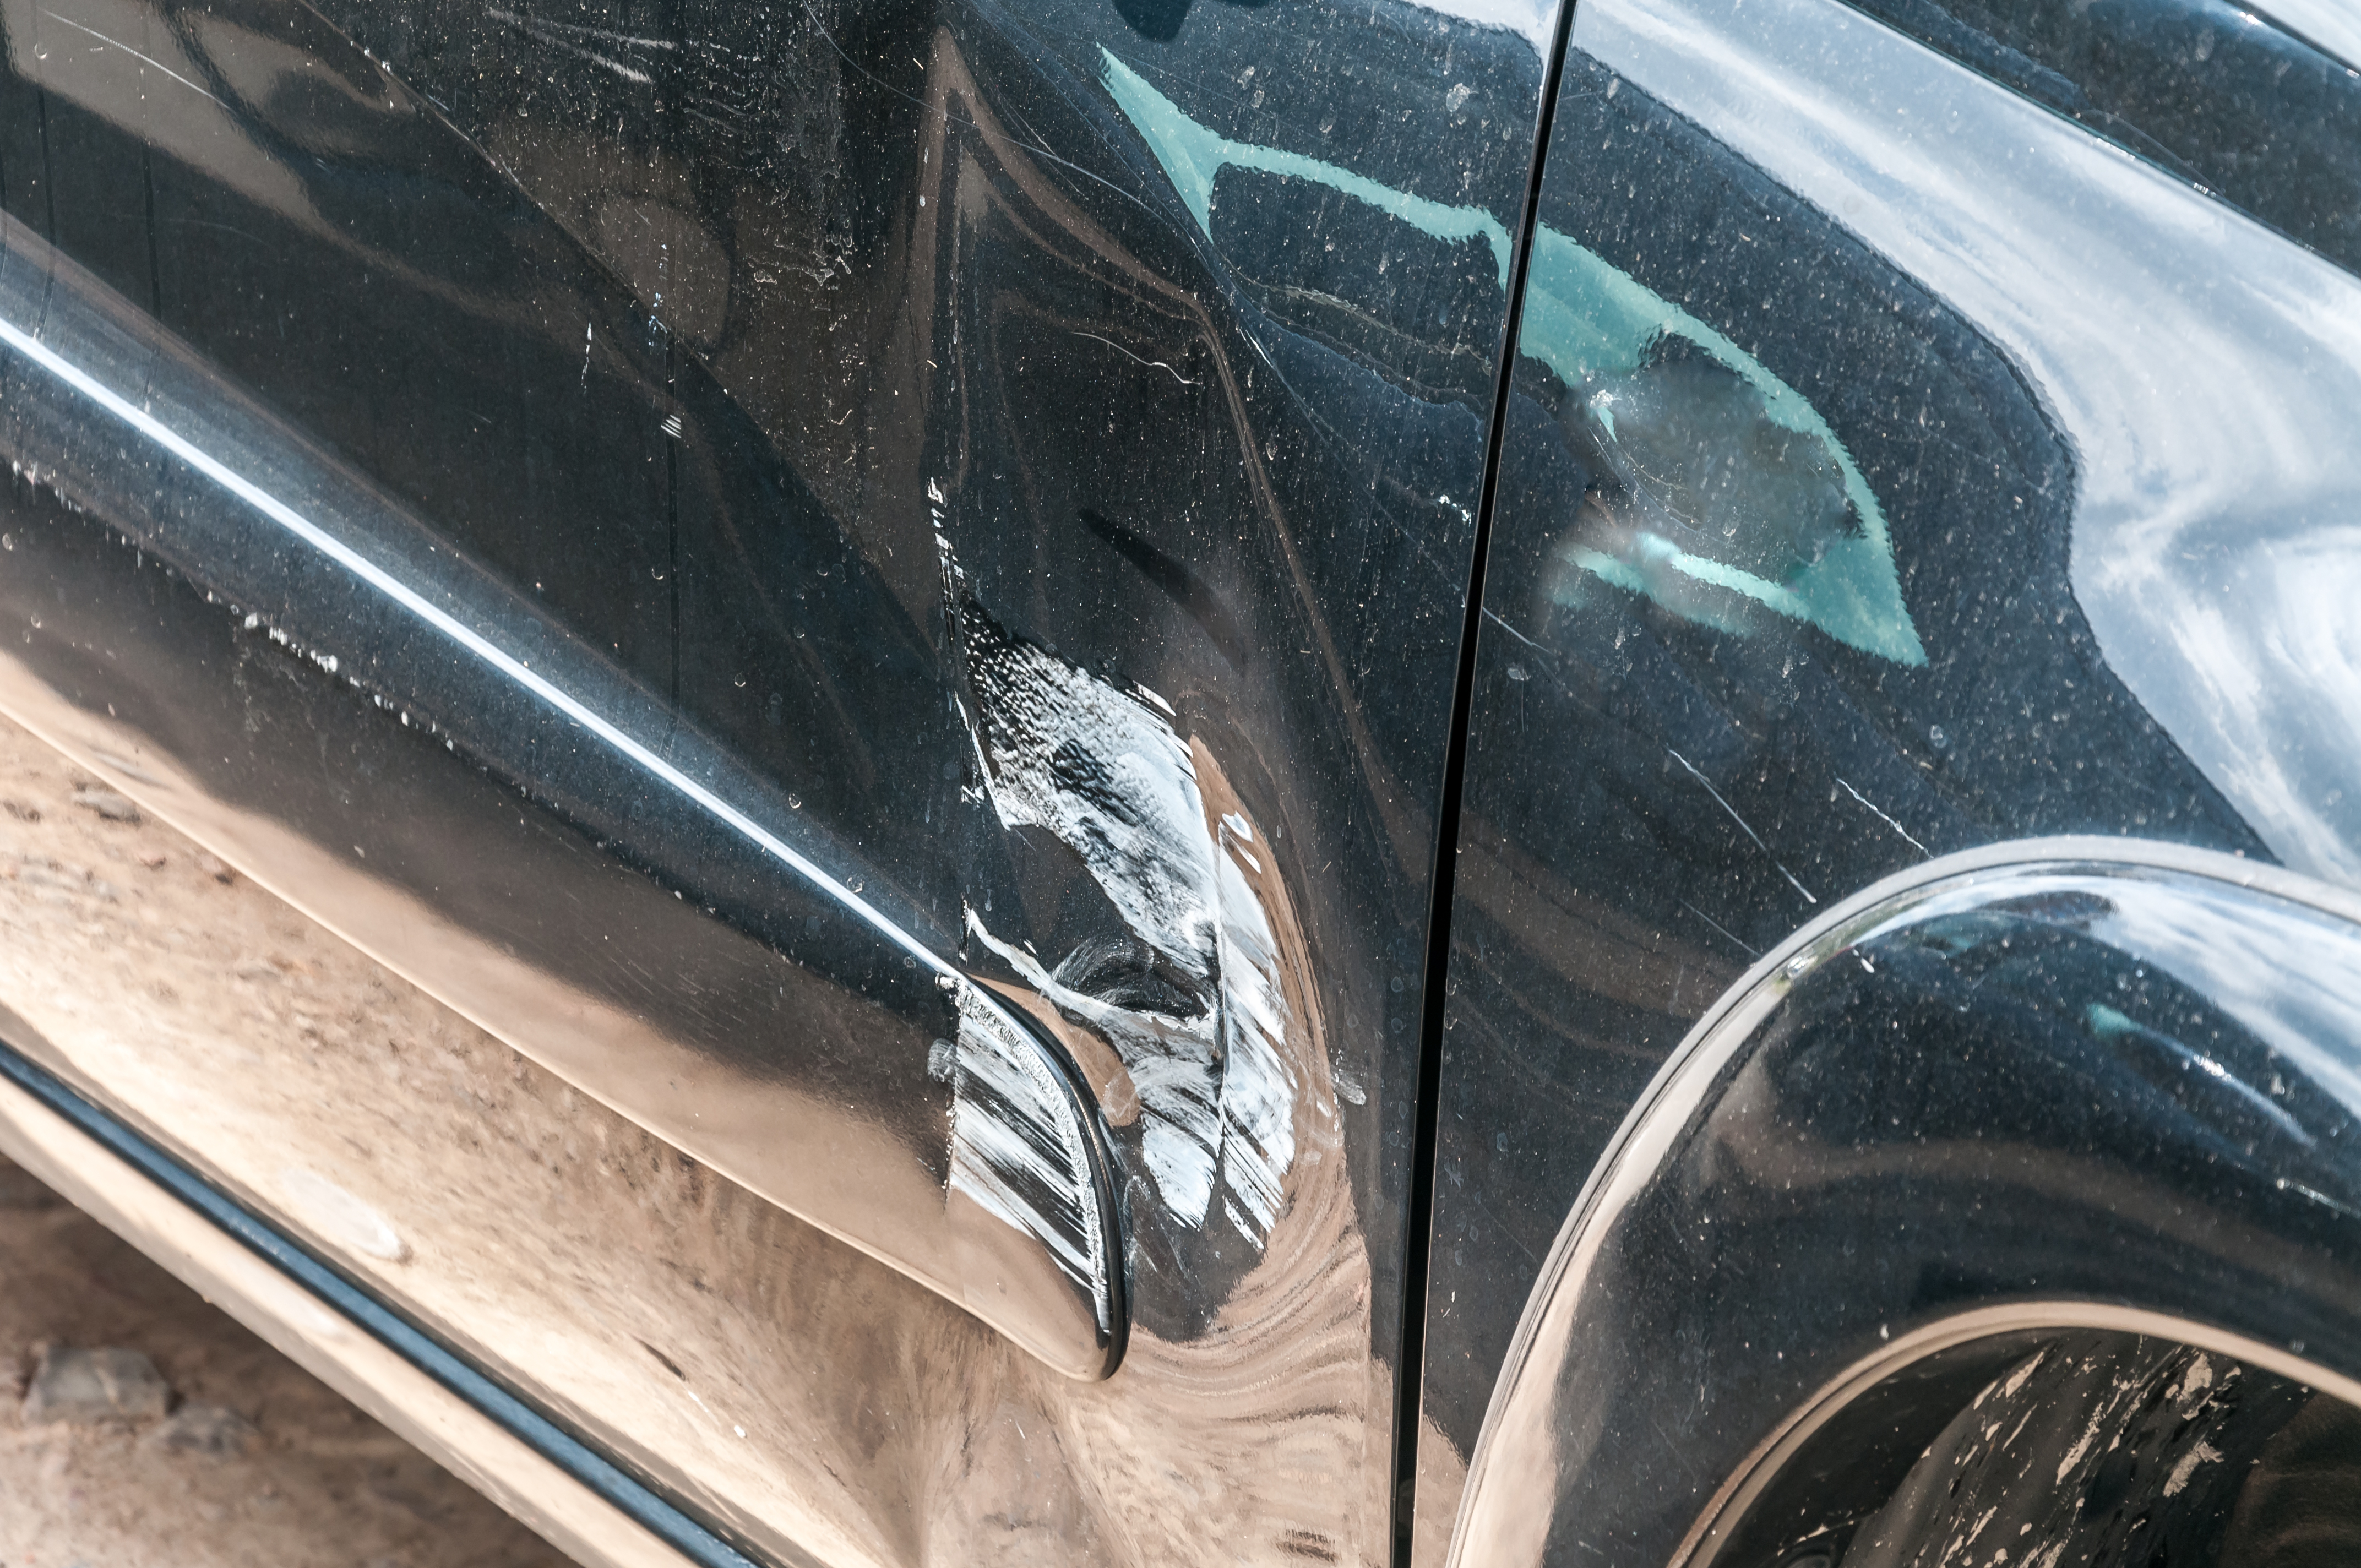 Ktoś Uszkodził Mój Samochód", Czyli Szkoda Parkingowa Może Zdarzyć Się Każdemu | Portal Konsumenta